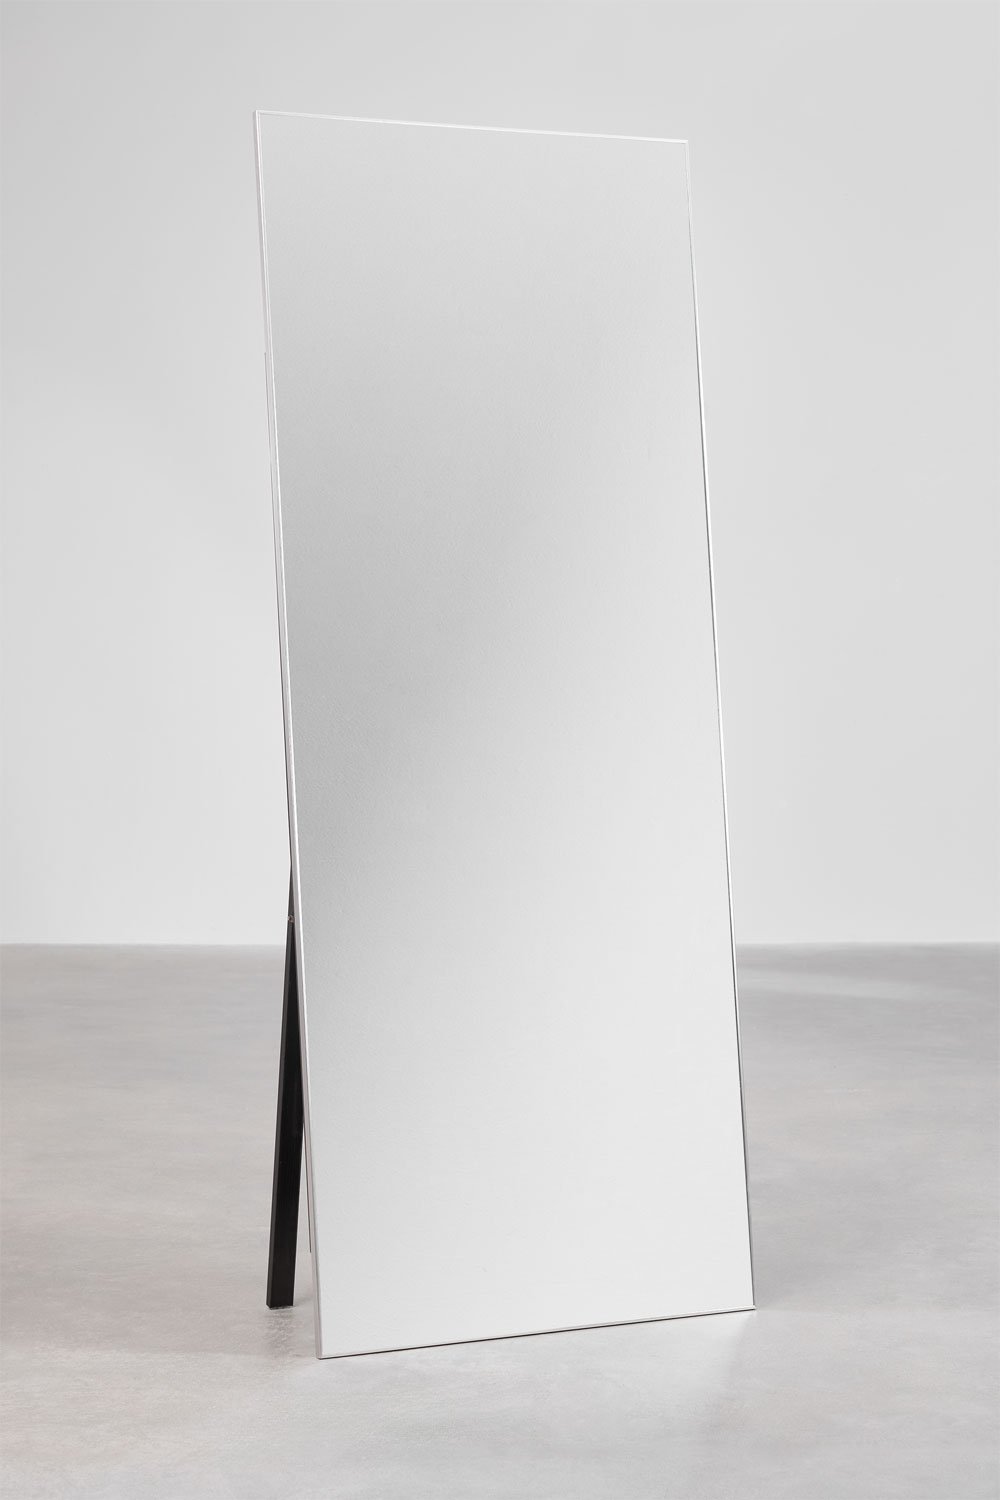 Miroir sur pied rectangulaire en aluminium (80x200 cm) Ondra, image de la galerie 1